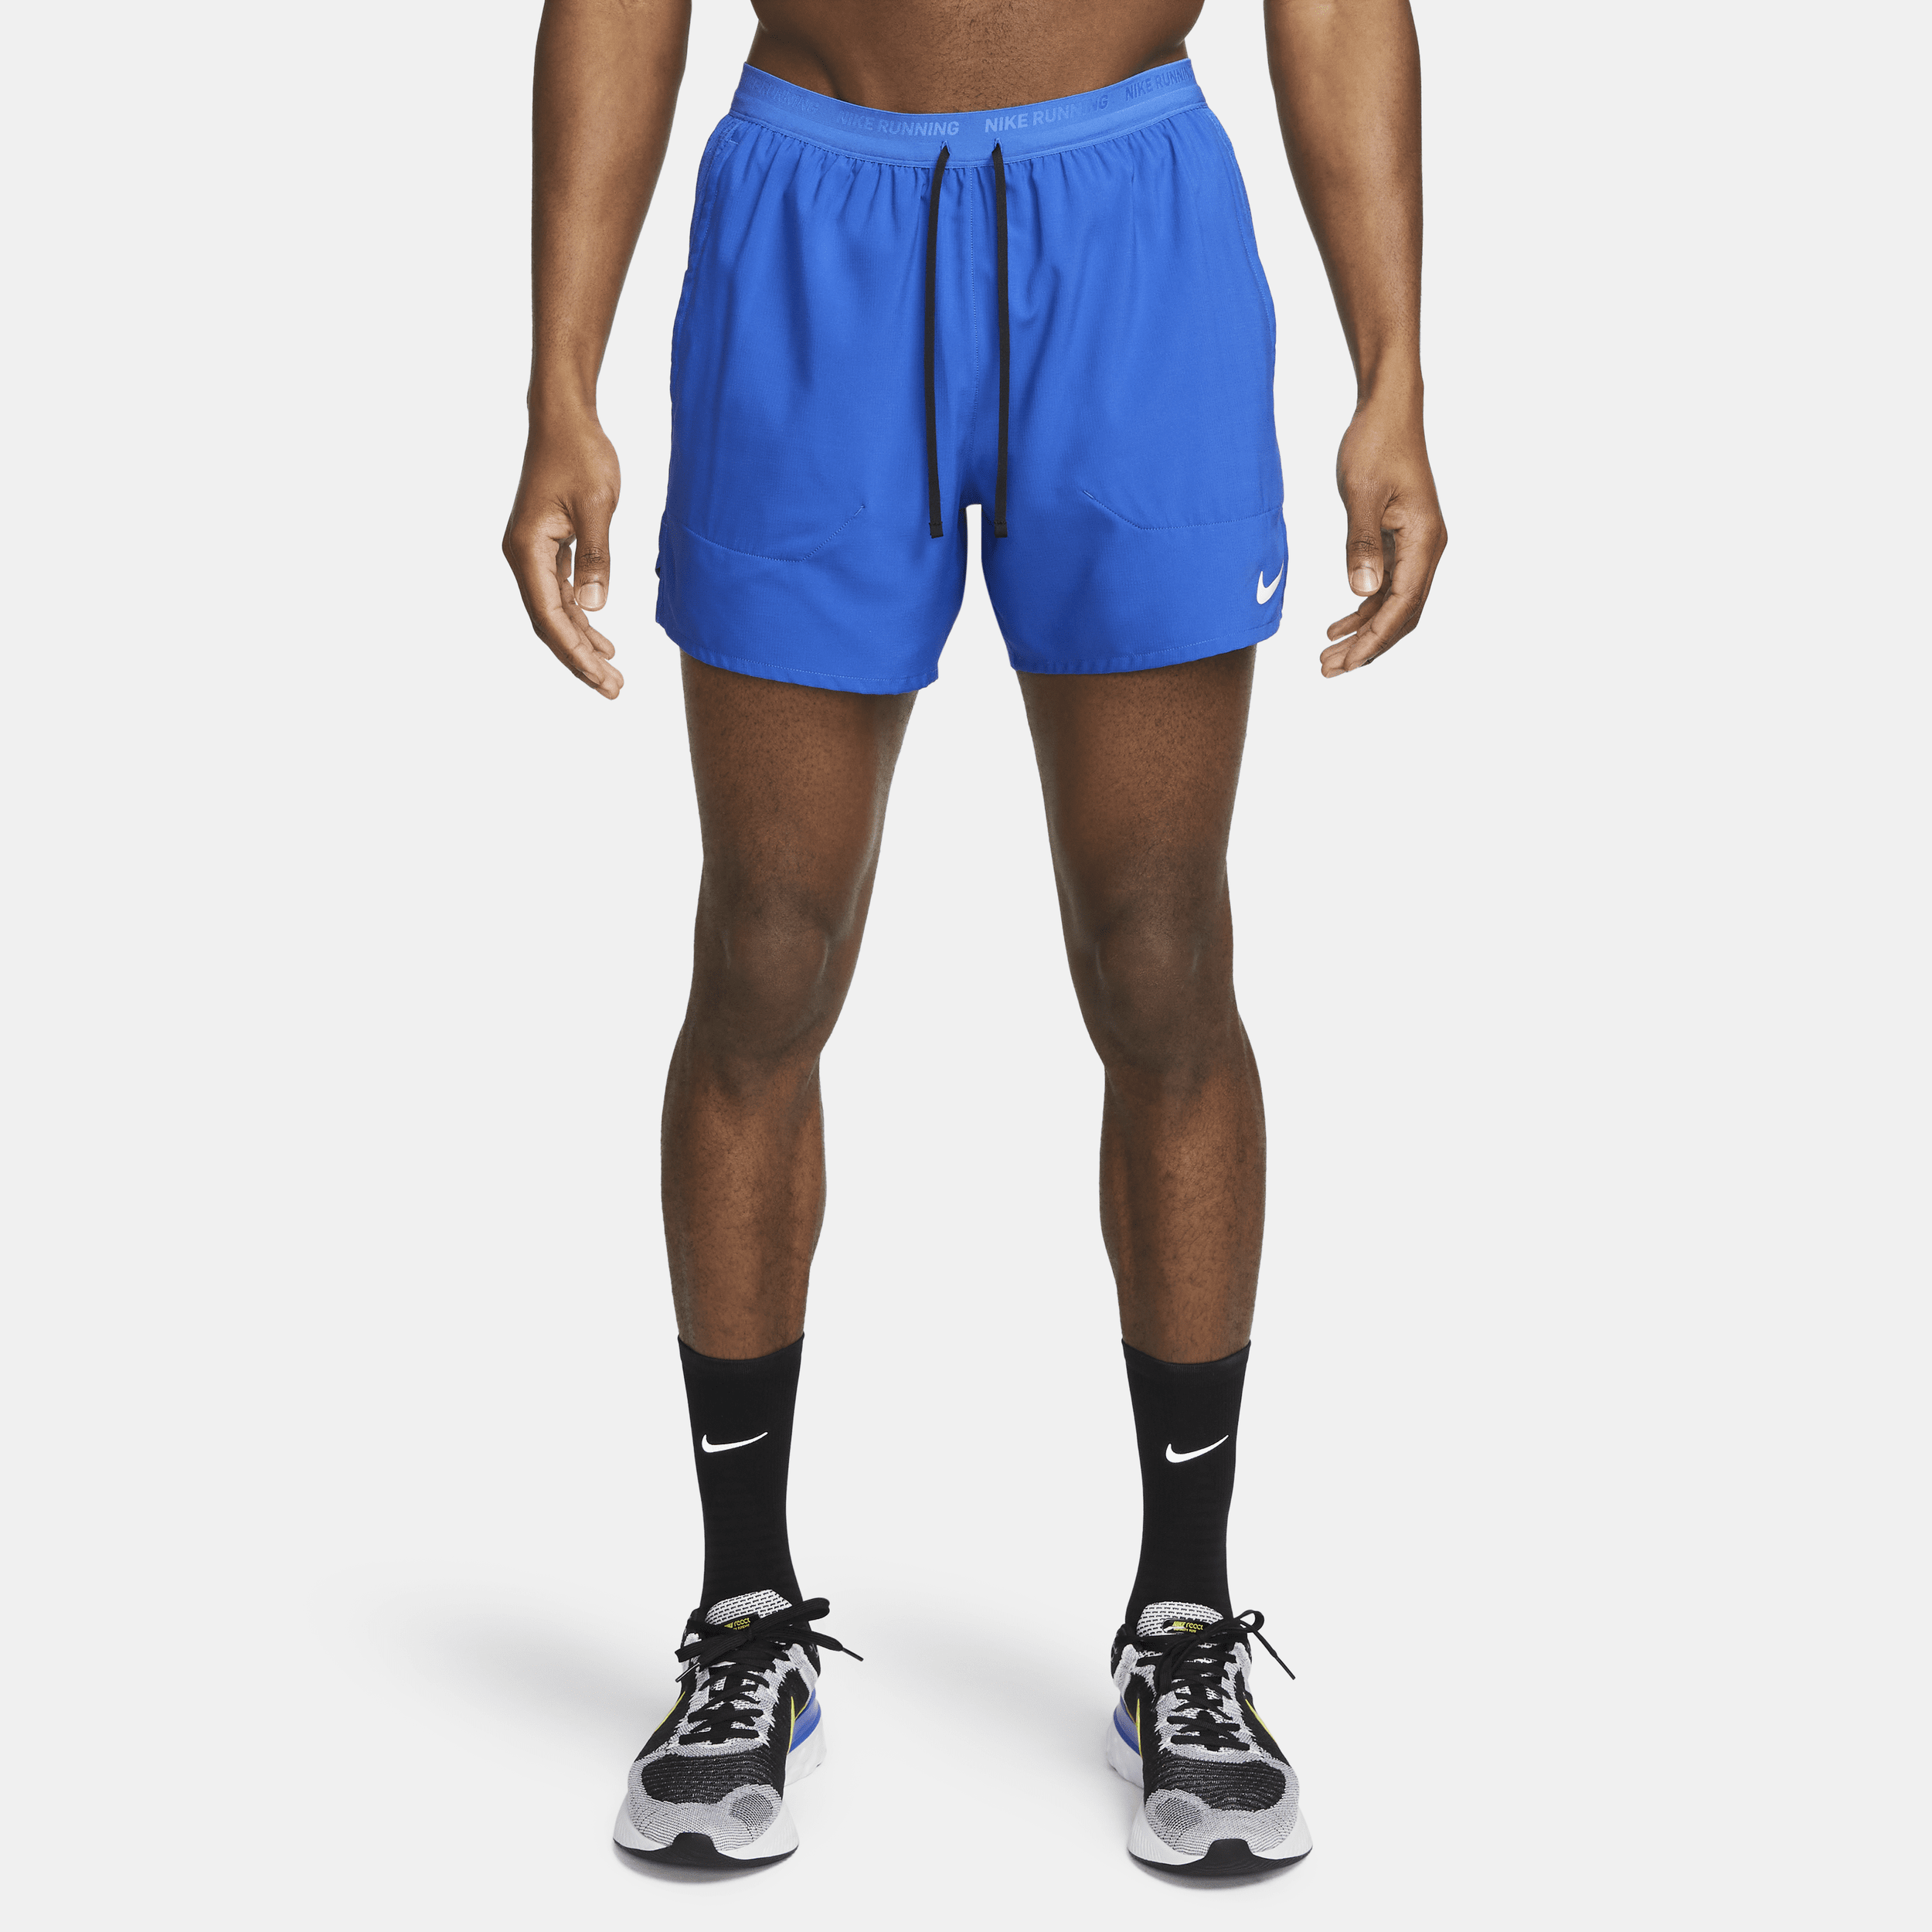 Shorts da running 13 cm con slip foderati Dri-FIT Nike Stride – Uomo - Blu